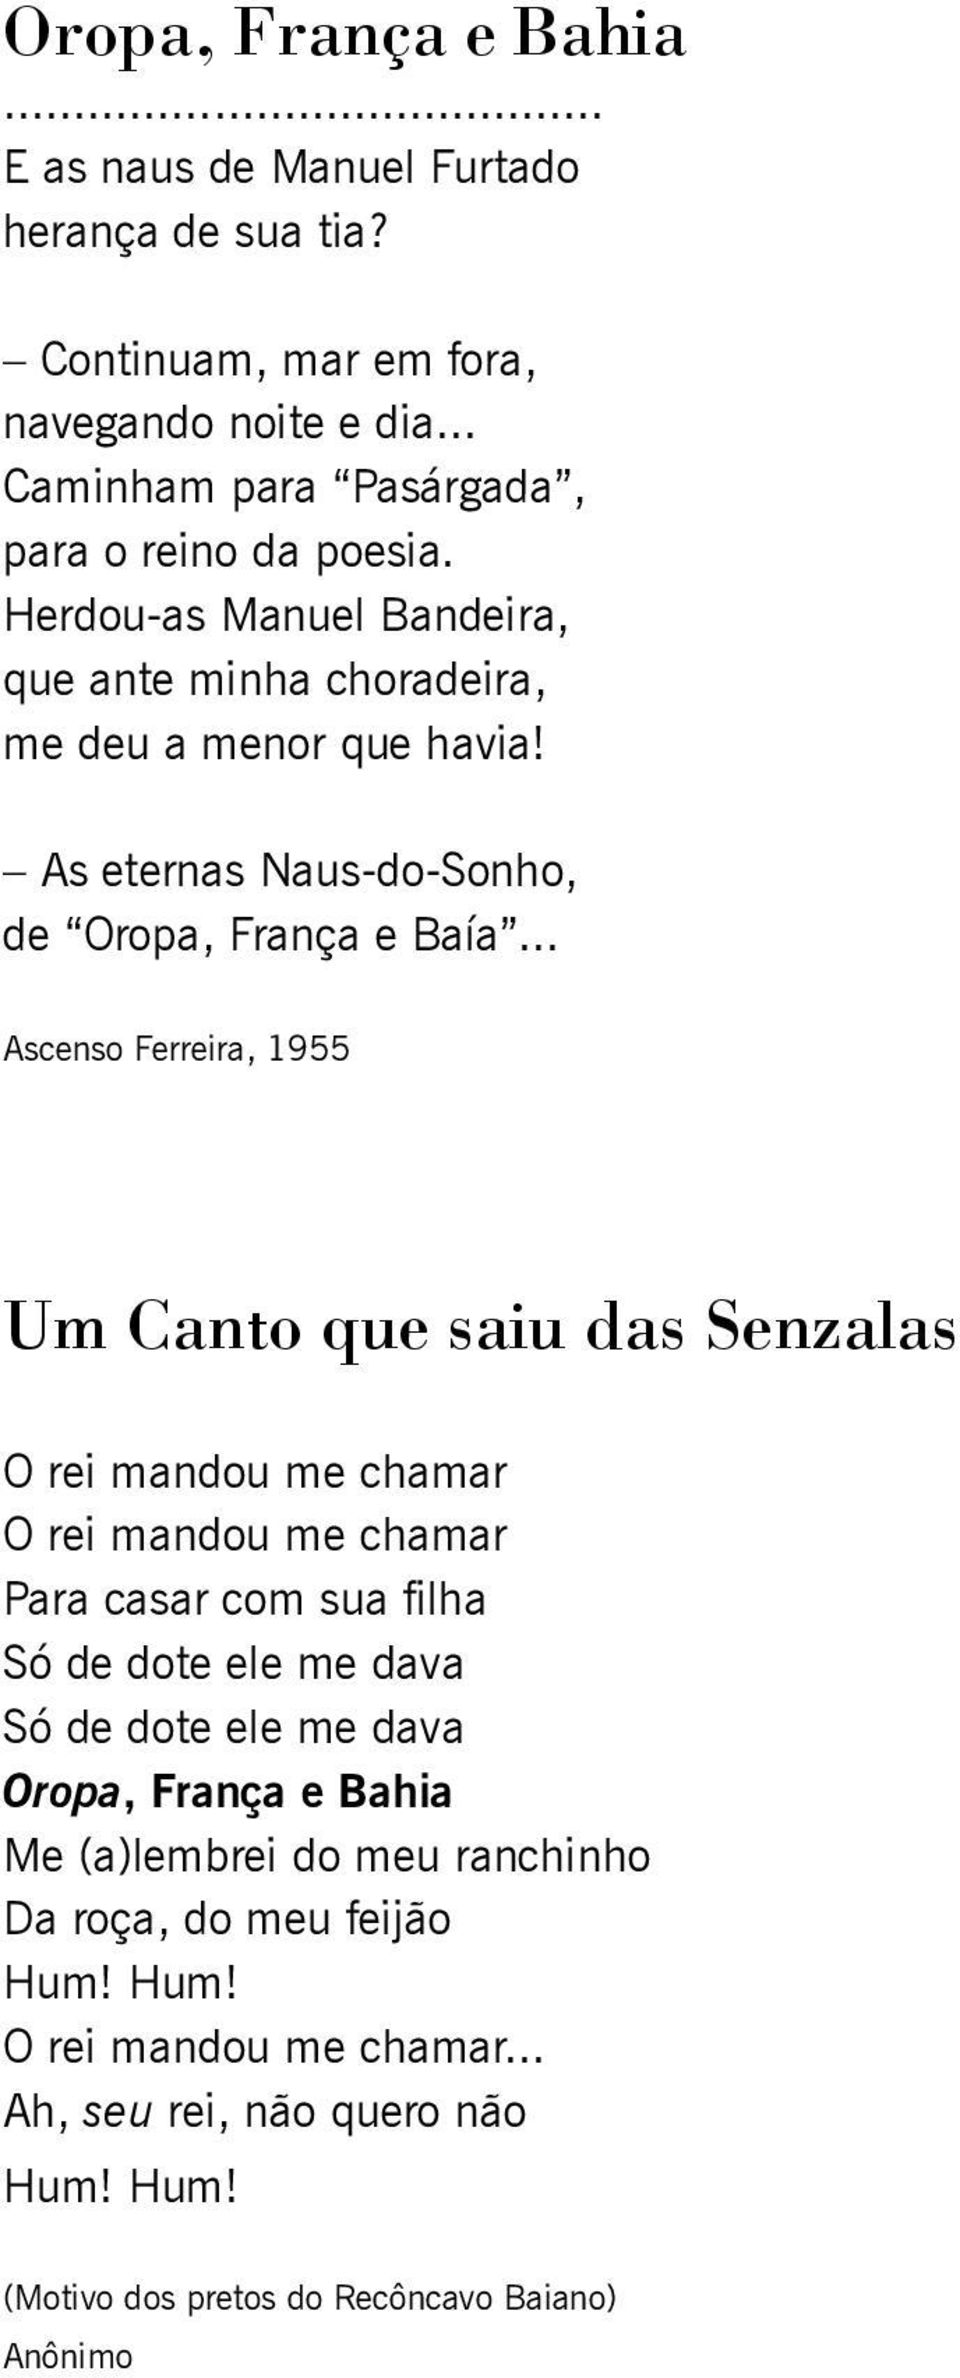 .. Ascenso Ferreira, 1955 Um Canto que saiu das Senzalas O rei mandou me chamar O rei mandou me chamar Para casar com sua filha Só de dote ele me dava Só de dote ele